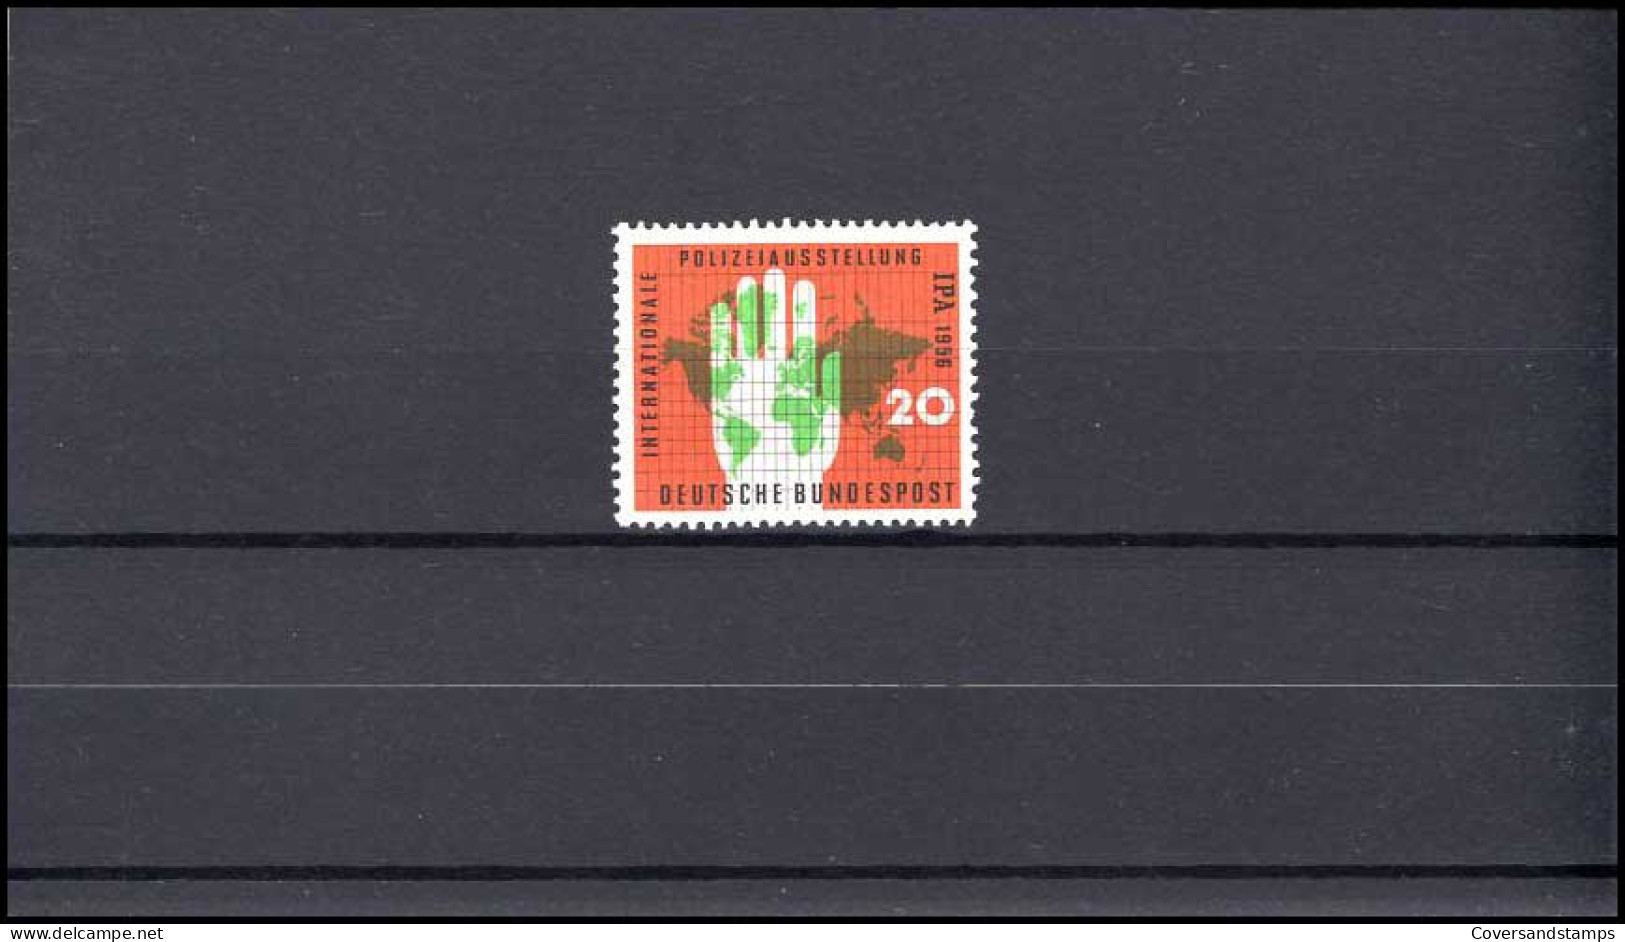  Bundespost MI 240   MNH / Postfrisch - Ungebraucht